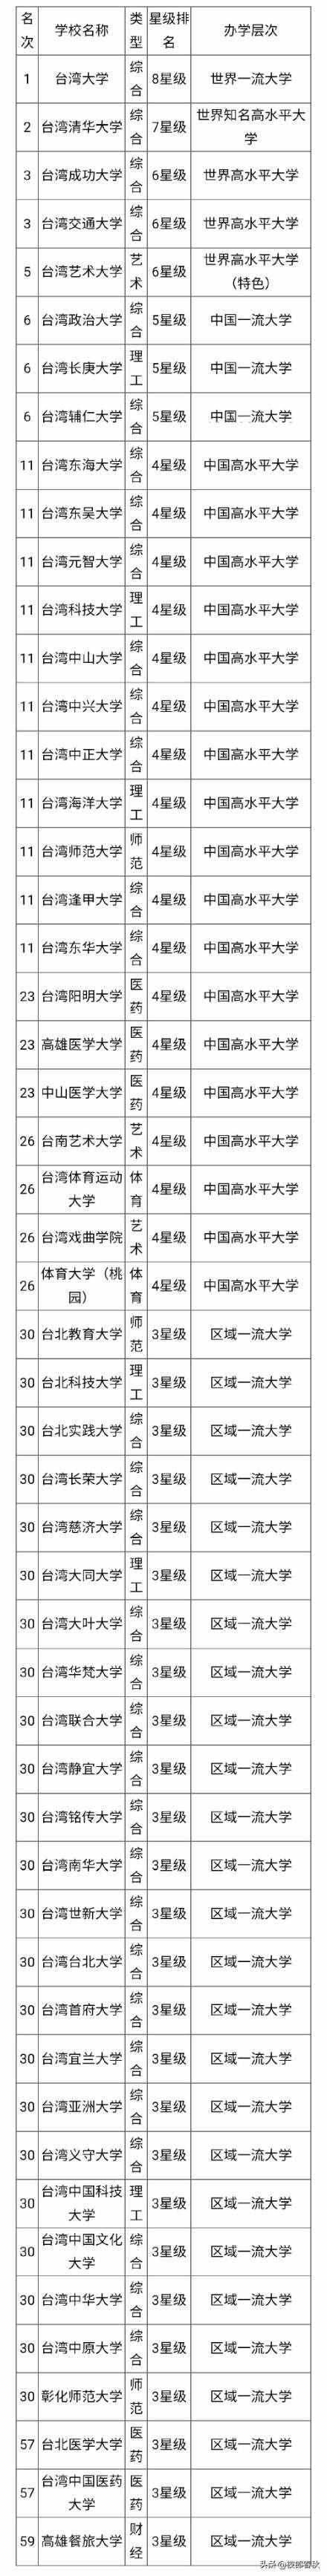 2020年中国台湾省大学排行榜